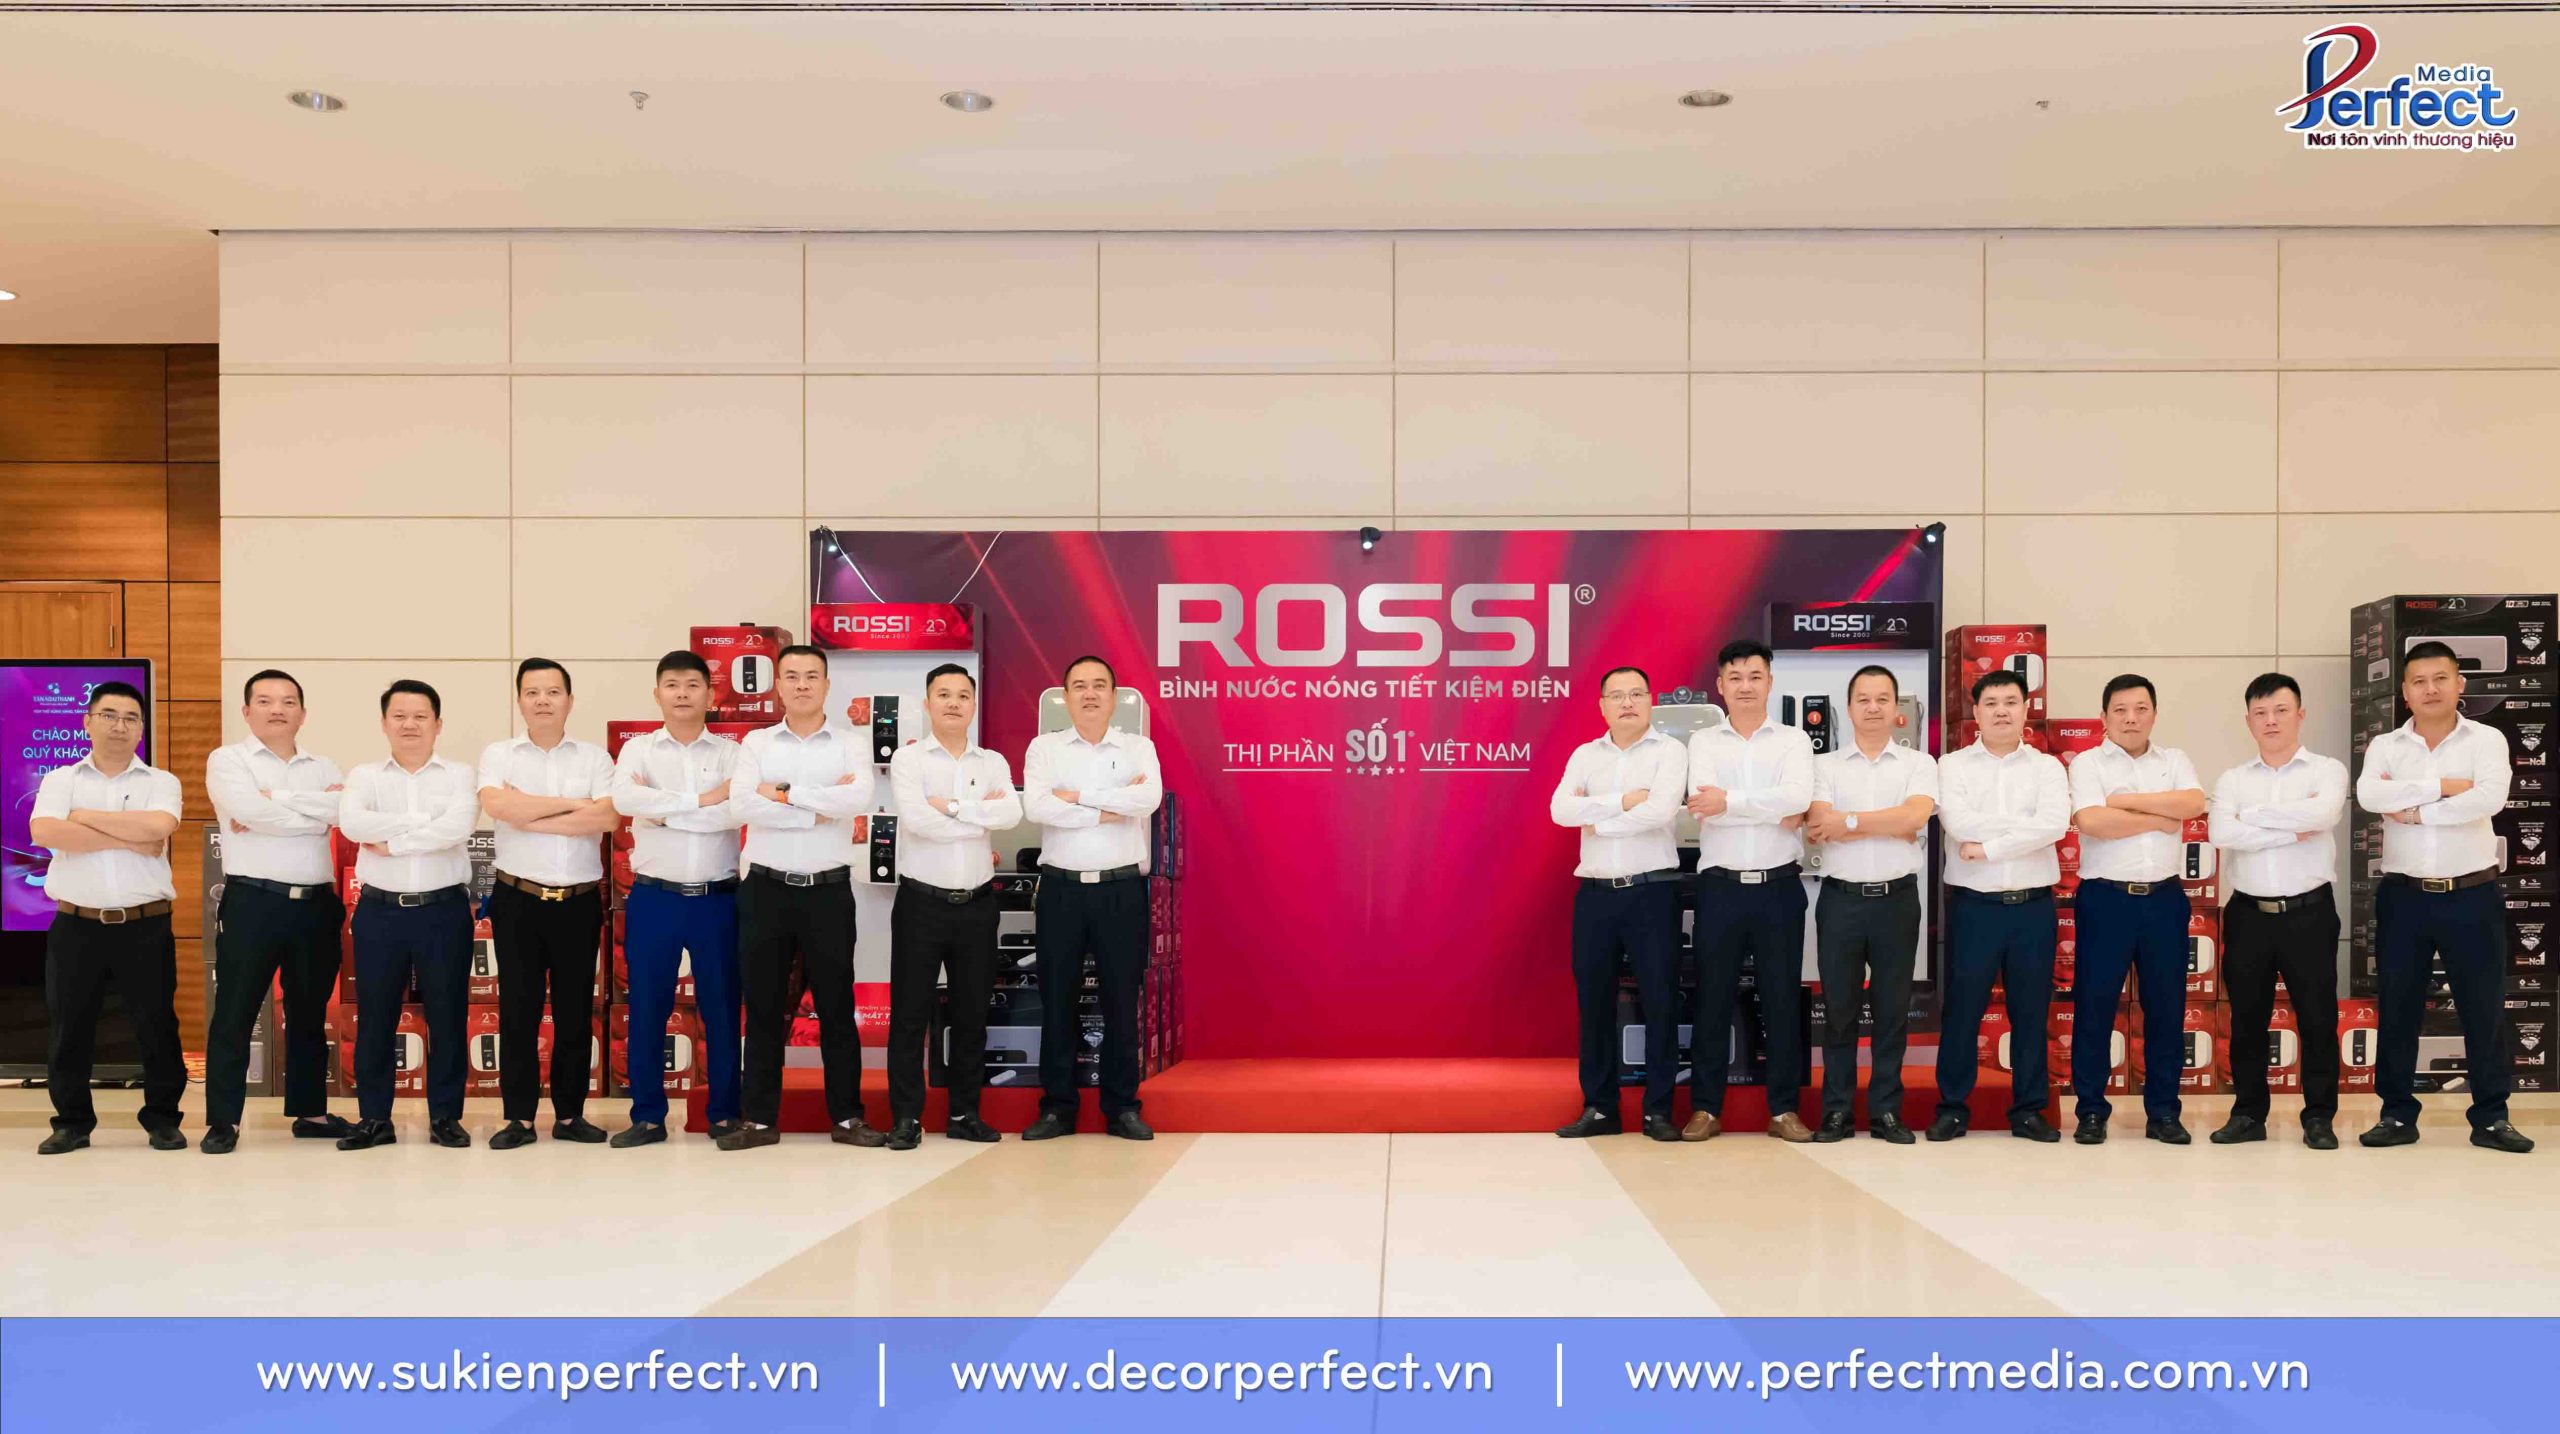 Nhân viên kinh doanh của tập đoàn Tân Á Đại Thành checkin tại gian hàng trưng bày bình nước nóng Rossi